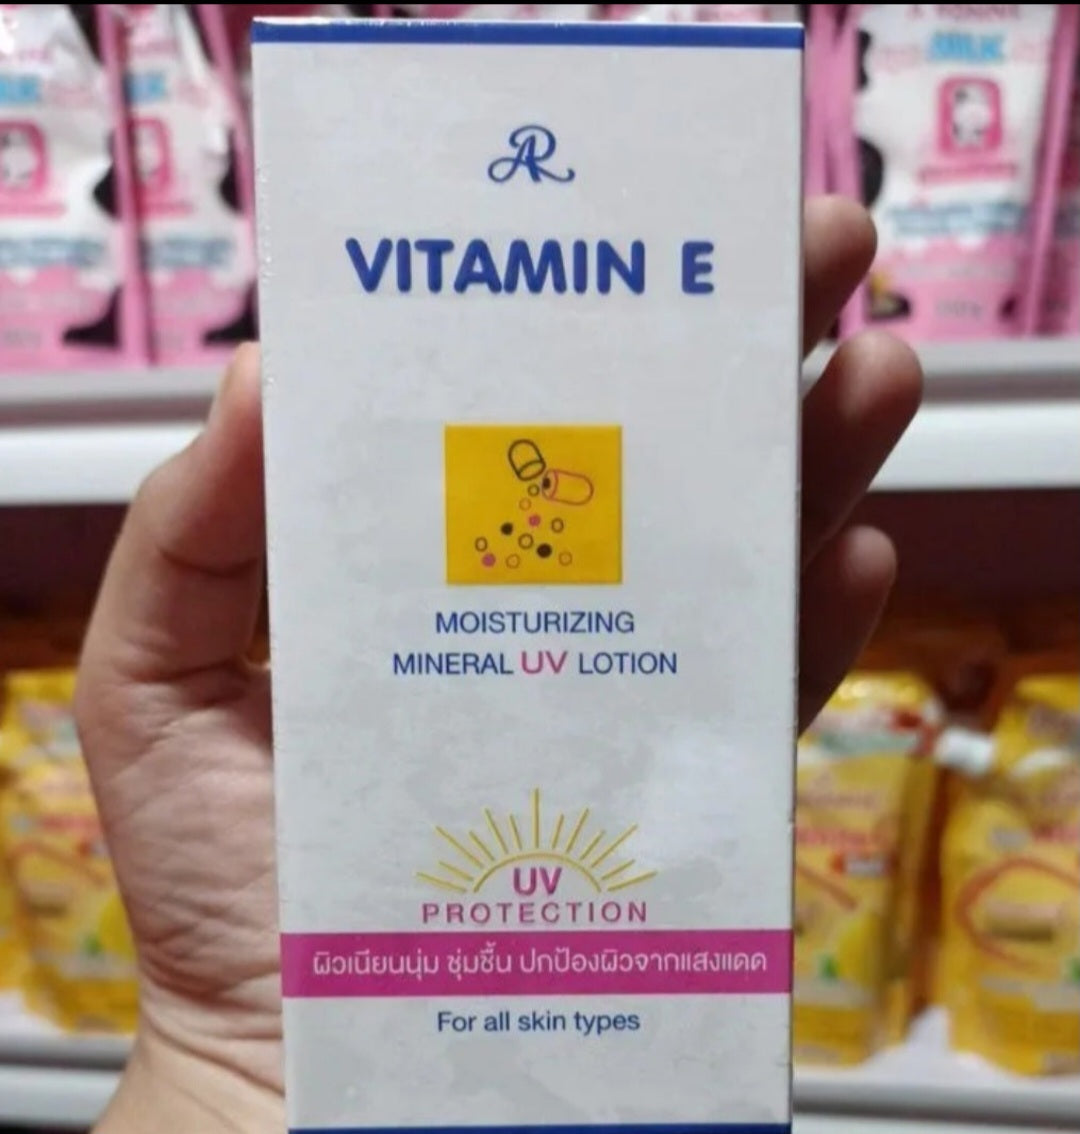 AR Vitamin E